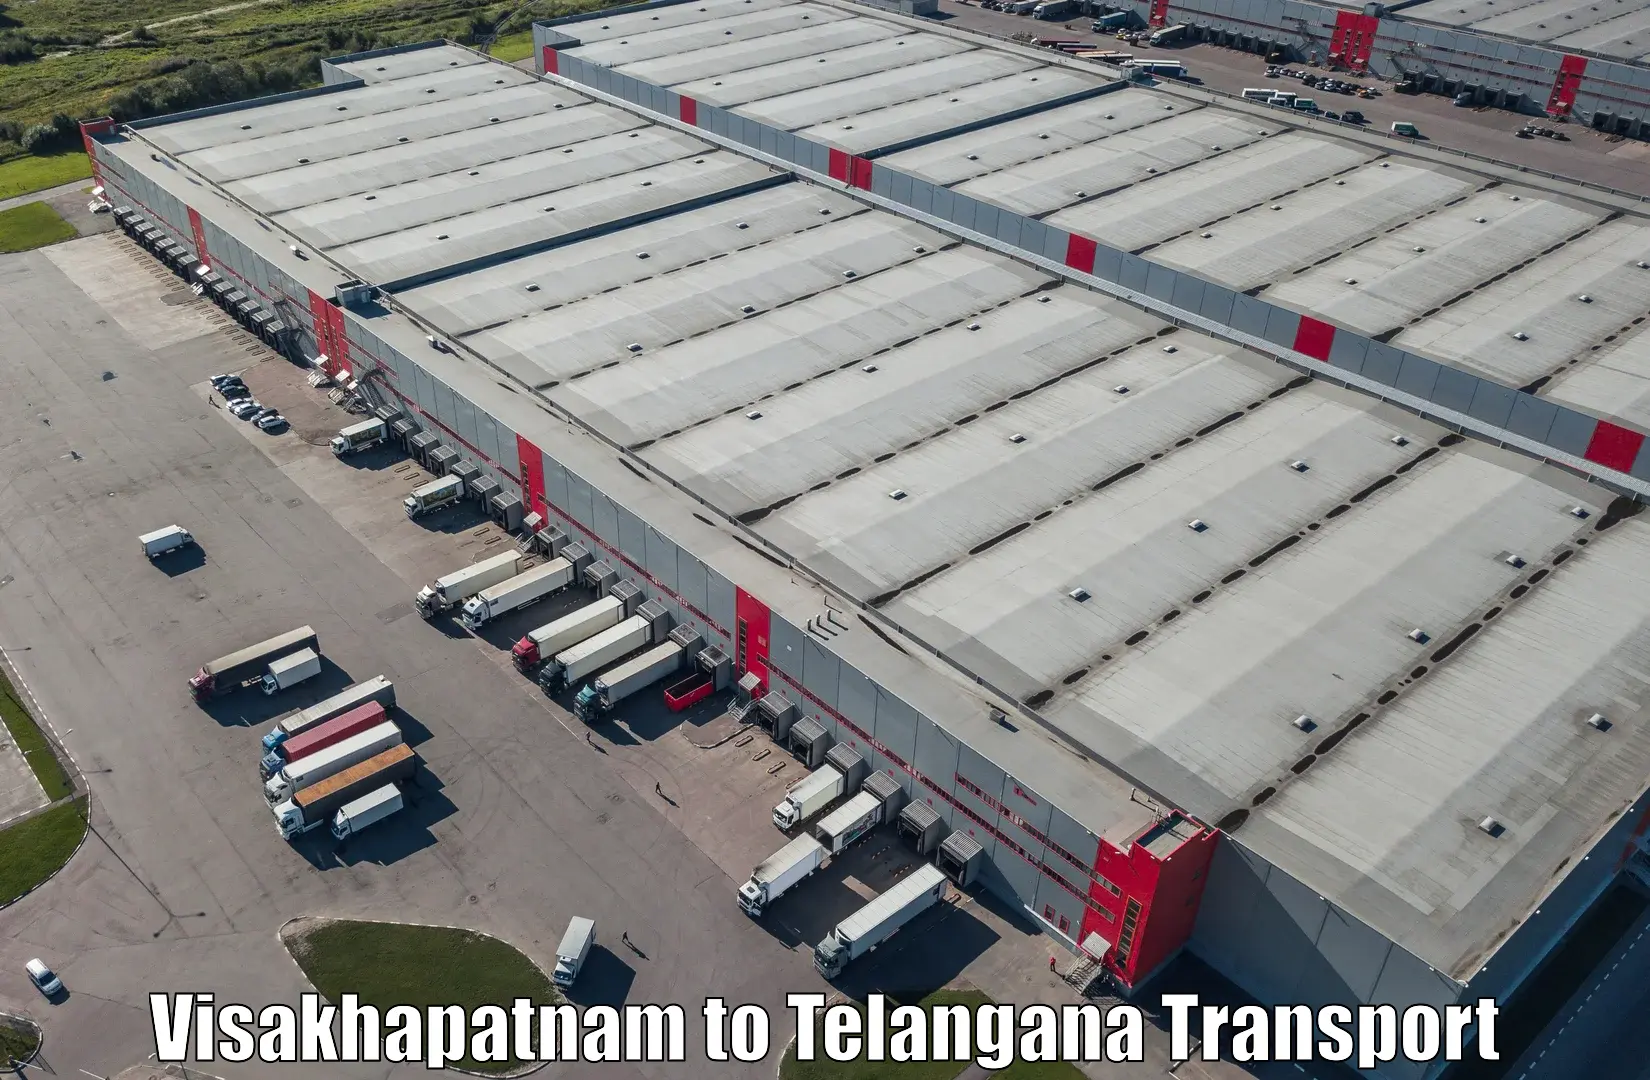 Online transport service Visakhapatnam to Jogipet